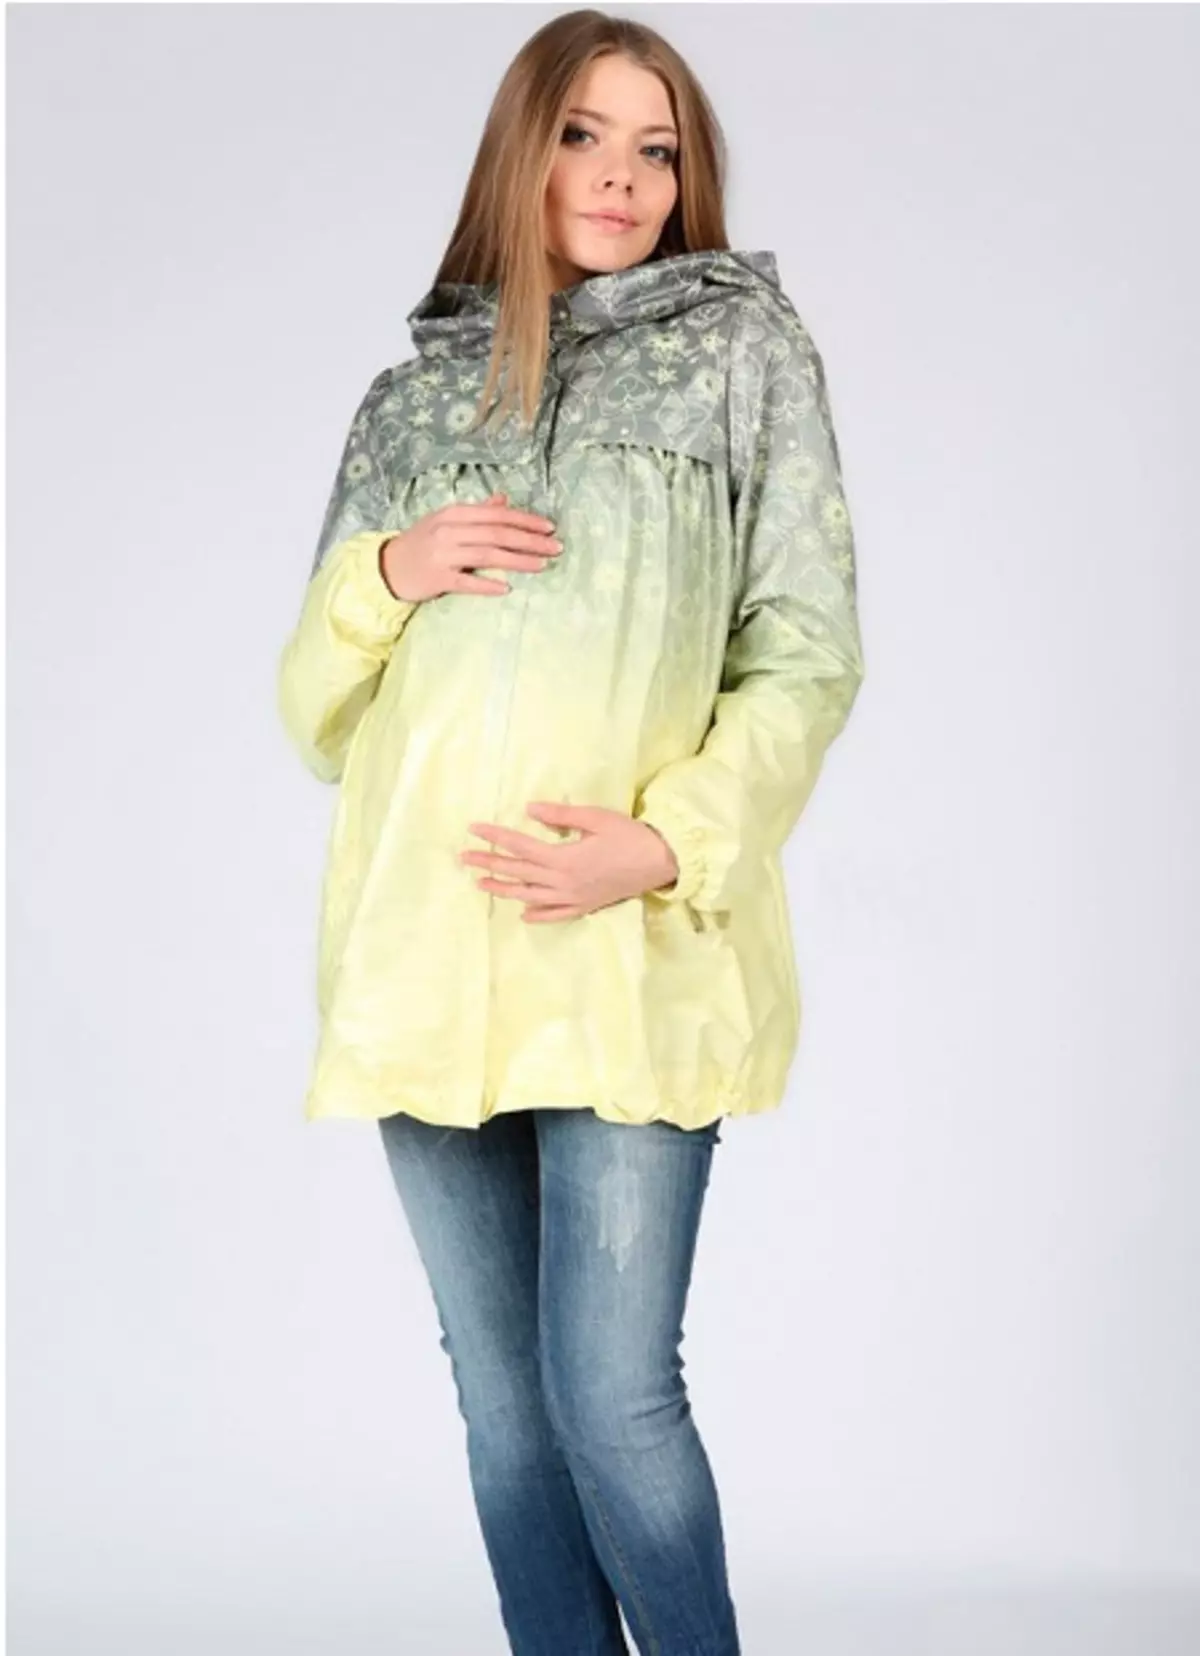 Capa para mujeres embarazadas (40 fotos): capa y capa de capa y chaqueta de Adel, Hm, Modress y Sweet Mamá 359_3